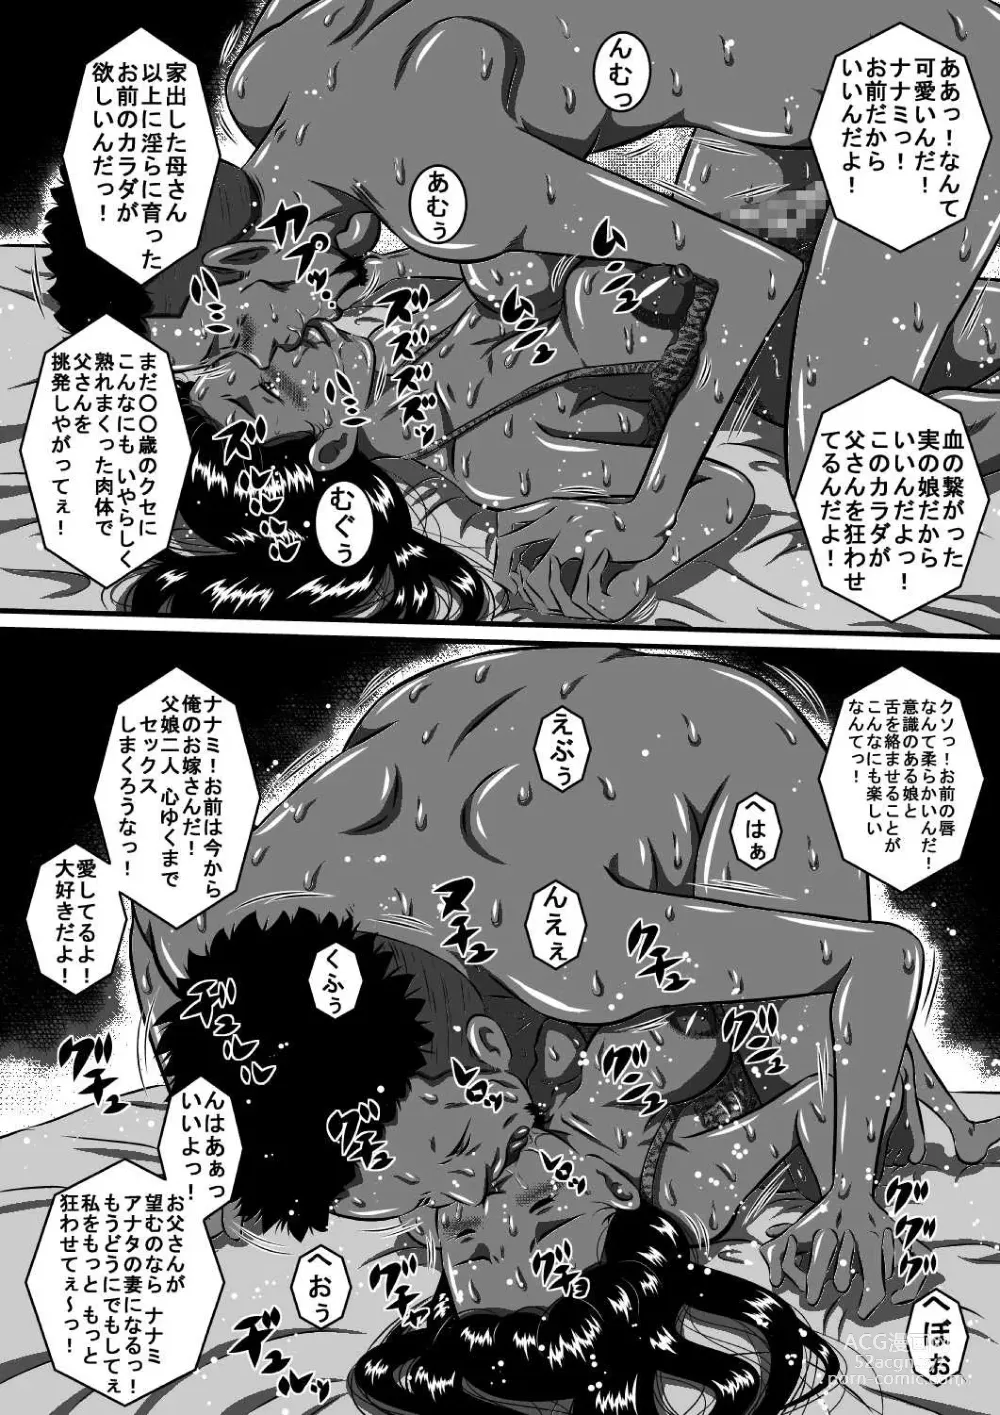 Page 17 of doujinshi 父と娘…姉と弟…血の繋がった家族だから…